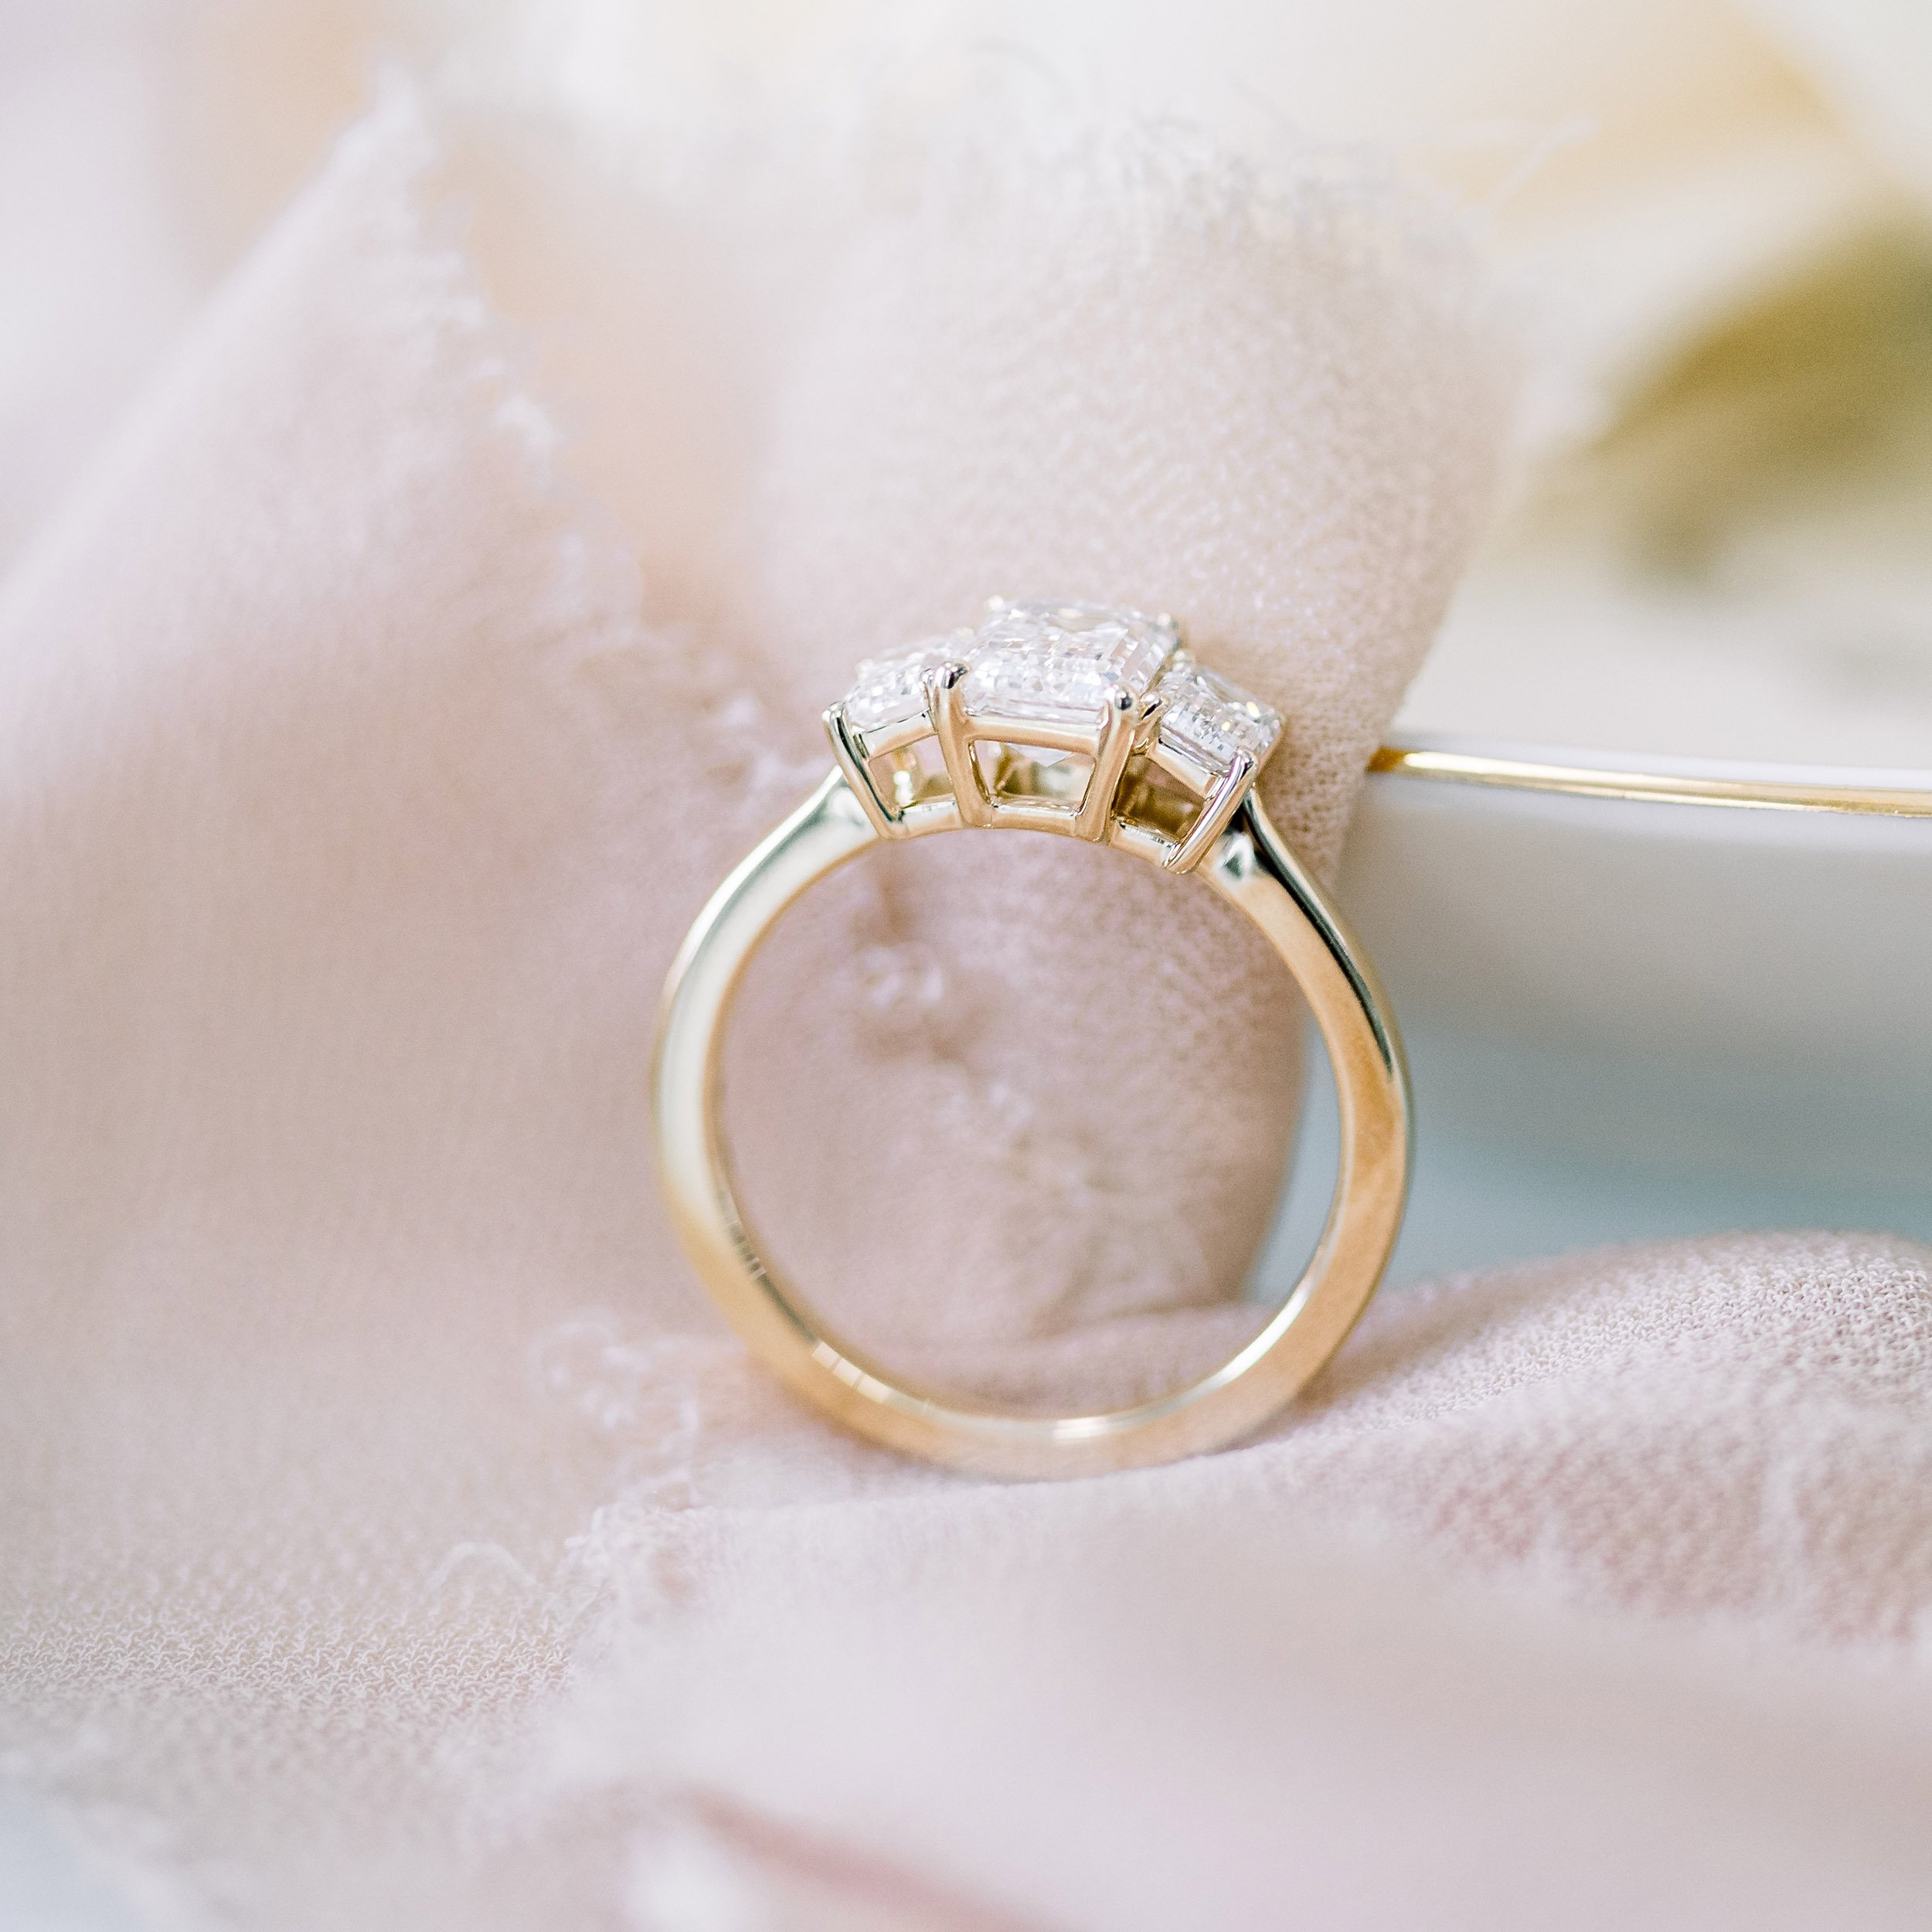 Bespoke Emerald-cut diamond five-stone ring — Bear Brooksbank